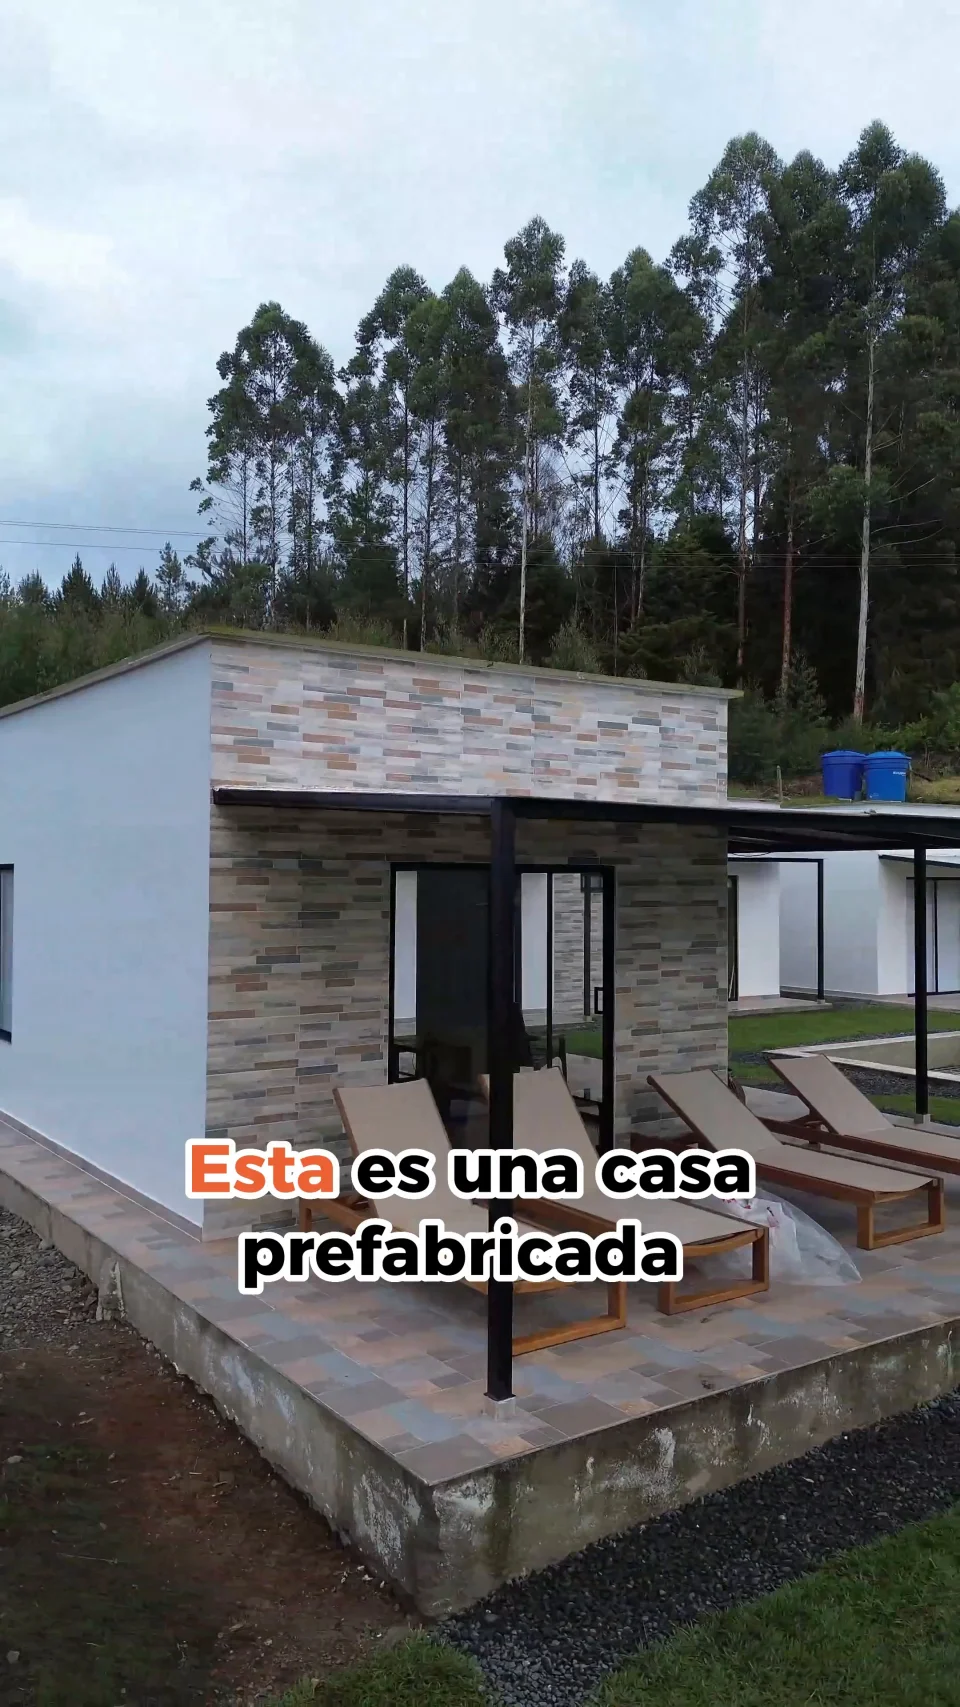 Casa prefabricada moderna - DISEÑA TU CASA, Hormigón prefabricado